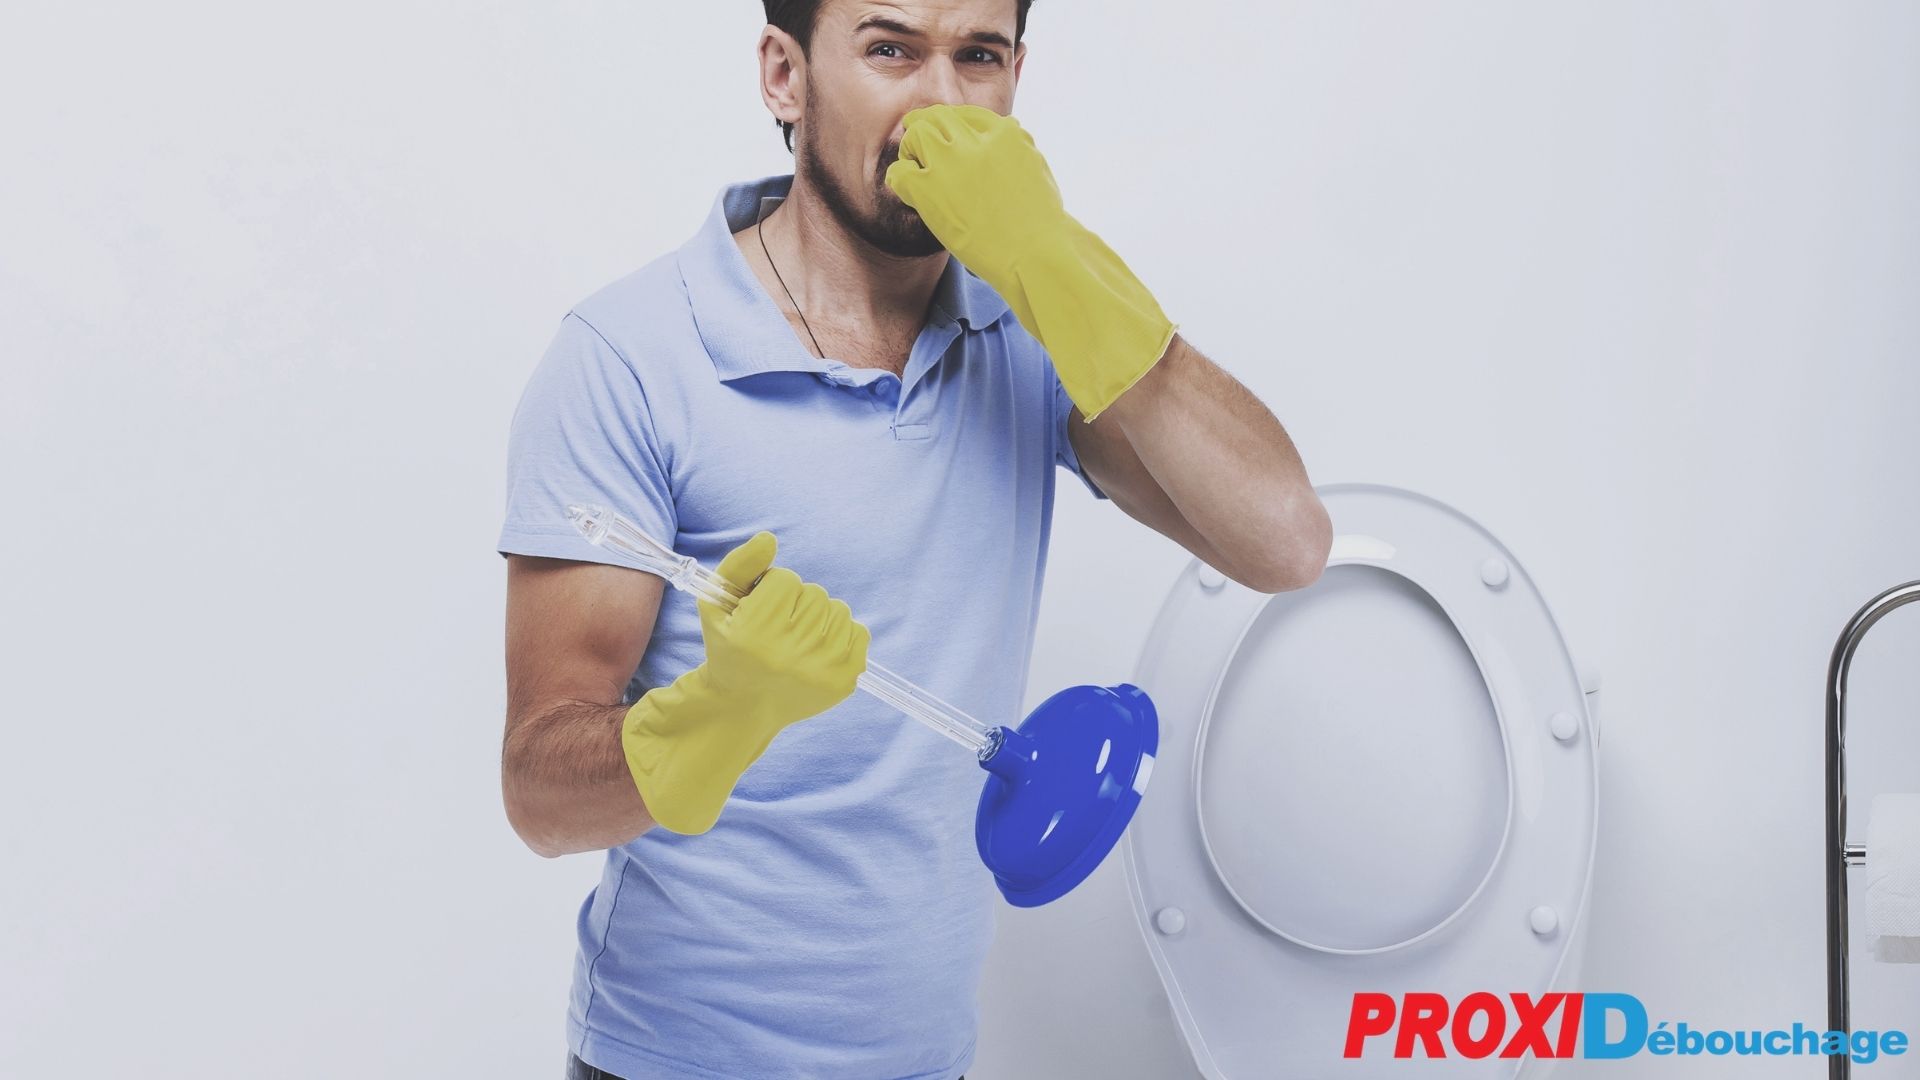 Comment éliminer et prévenir les odeurs dans les canalisations ?